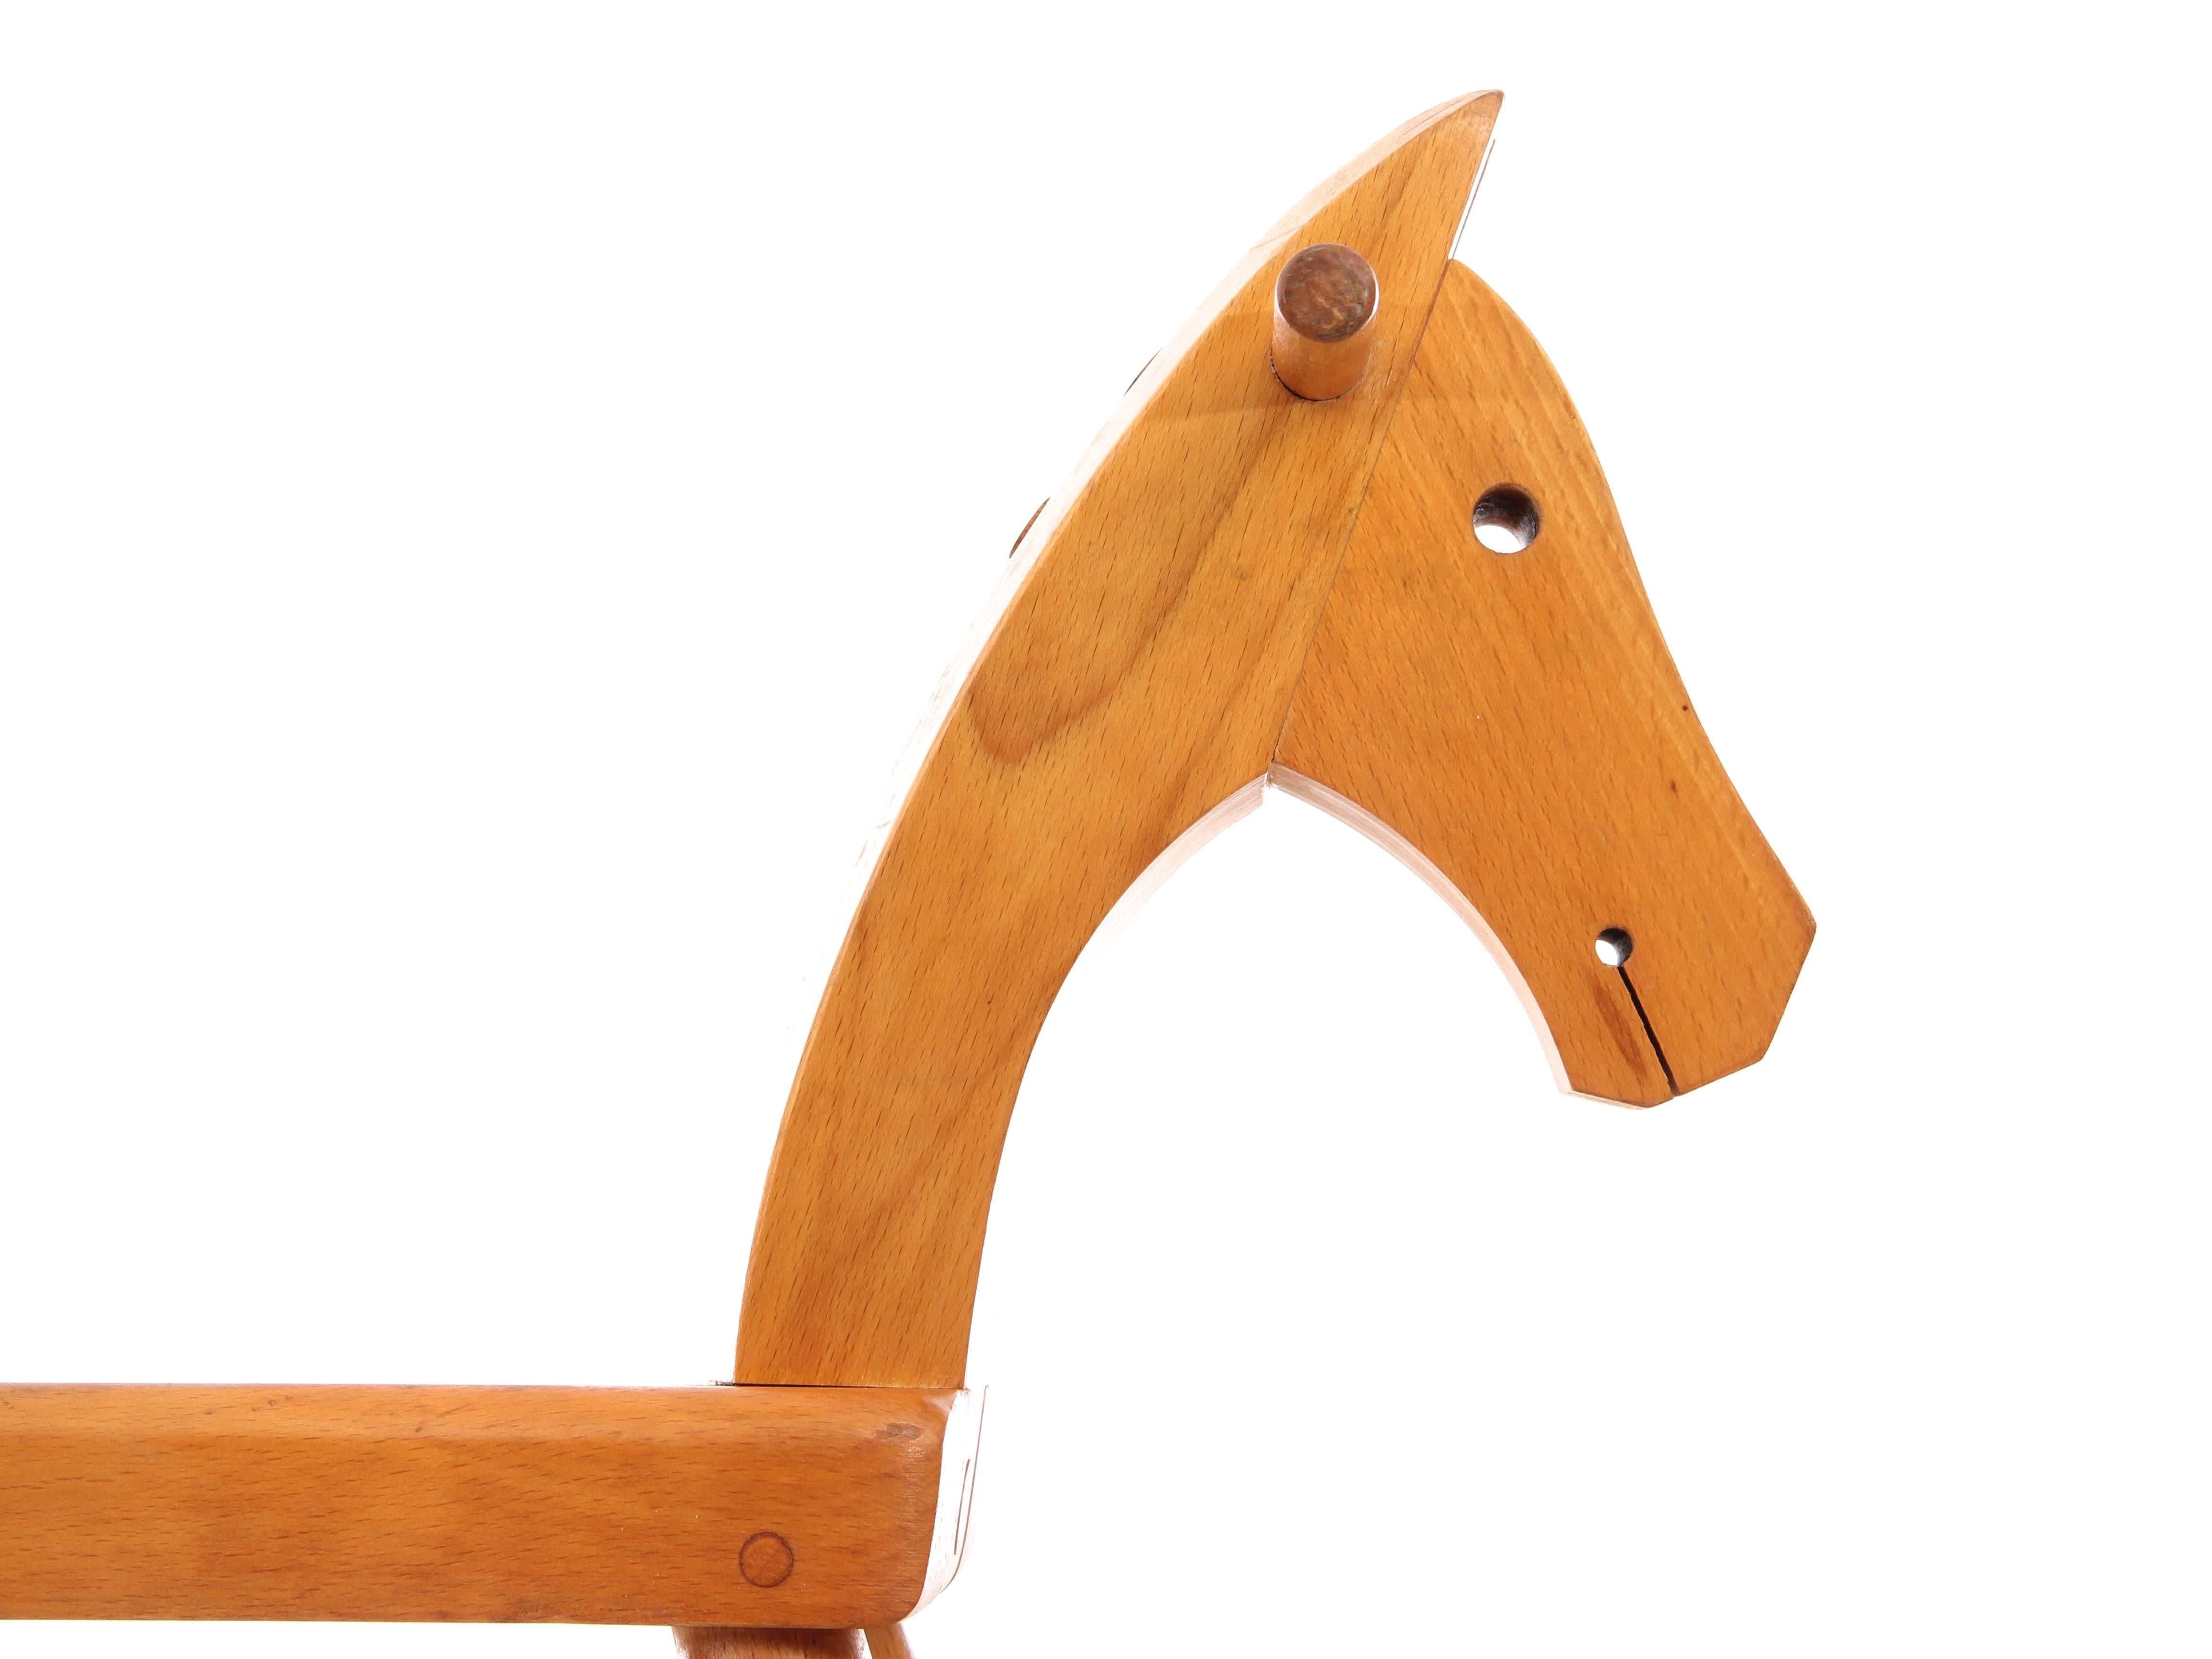 Mid-Century Modern Scandinavian Rocking Horse by Kay Bojesen 1